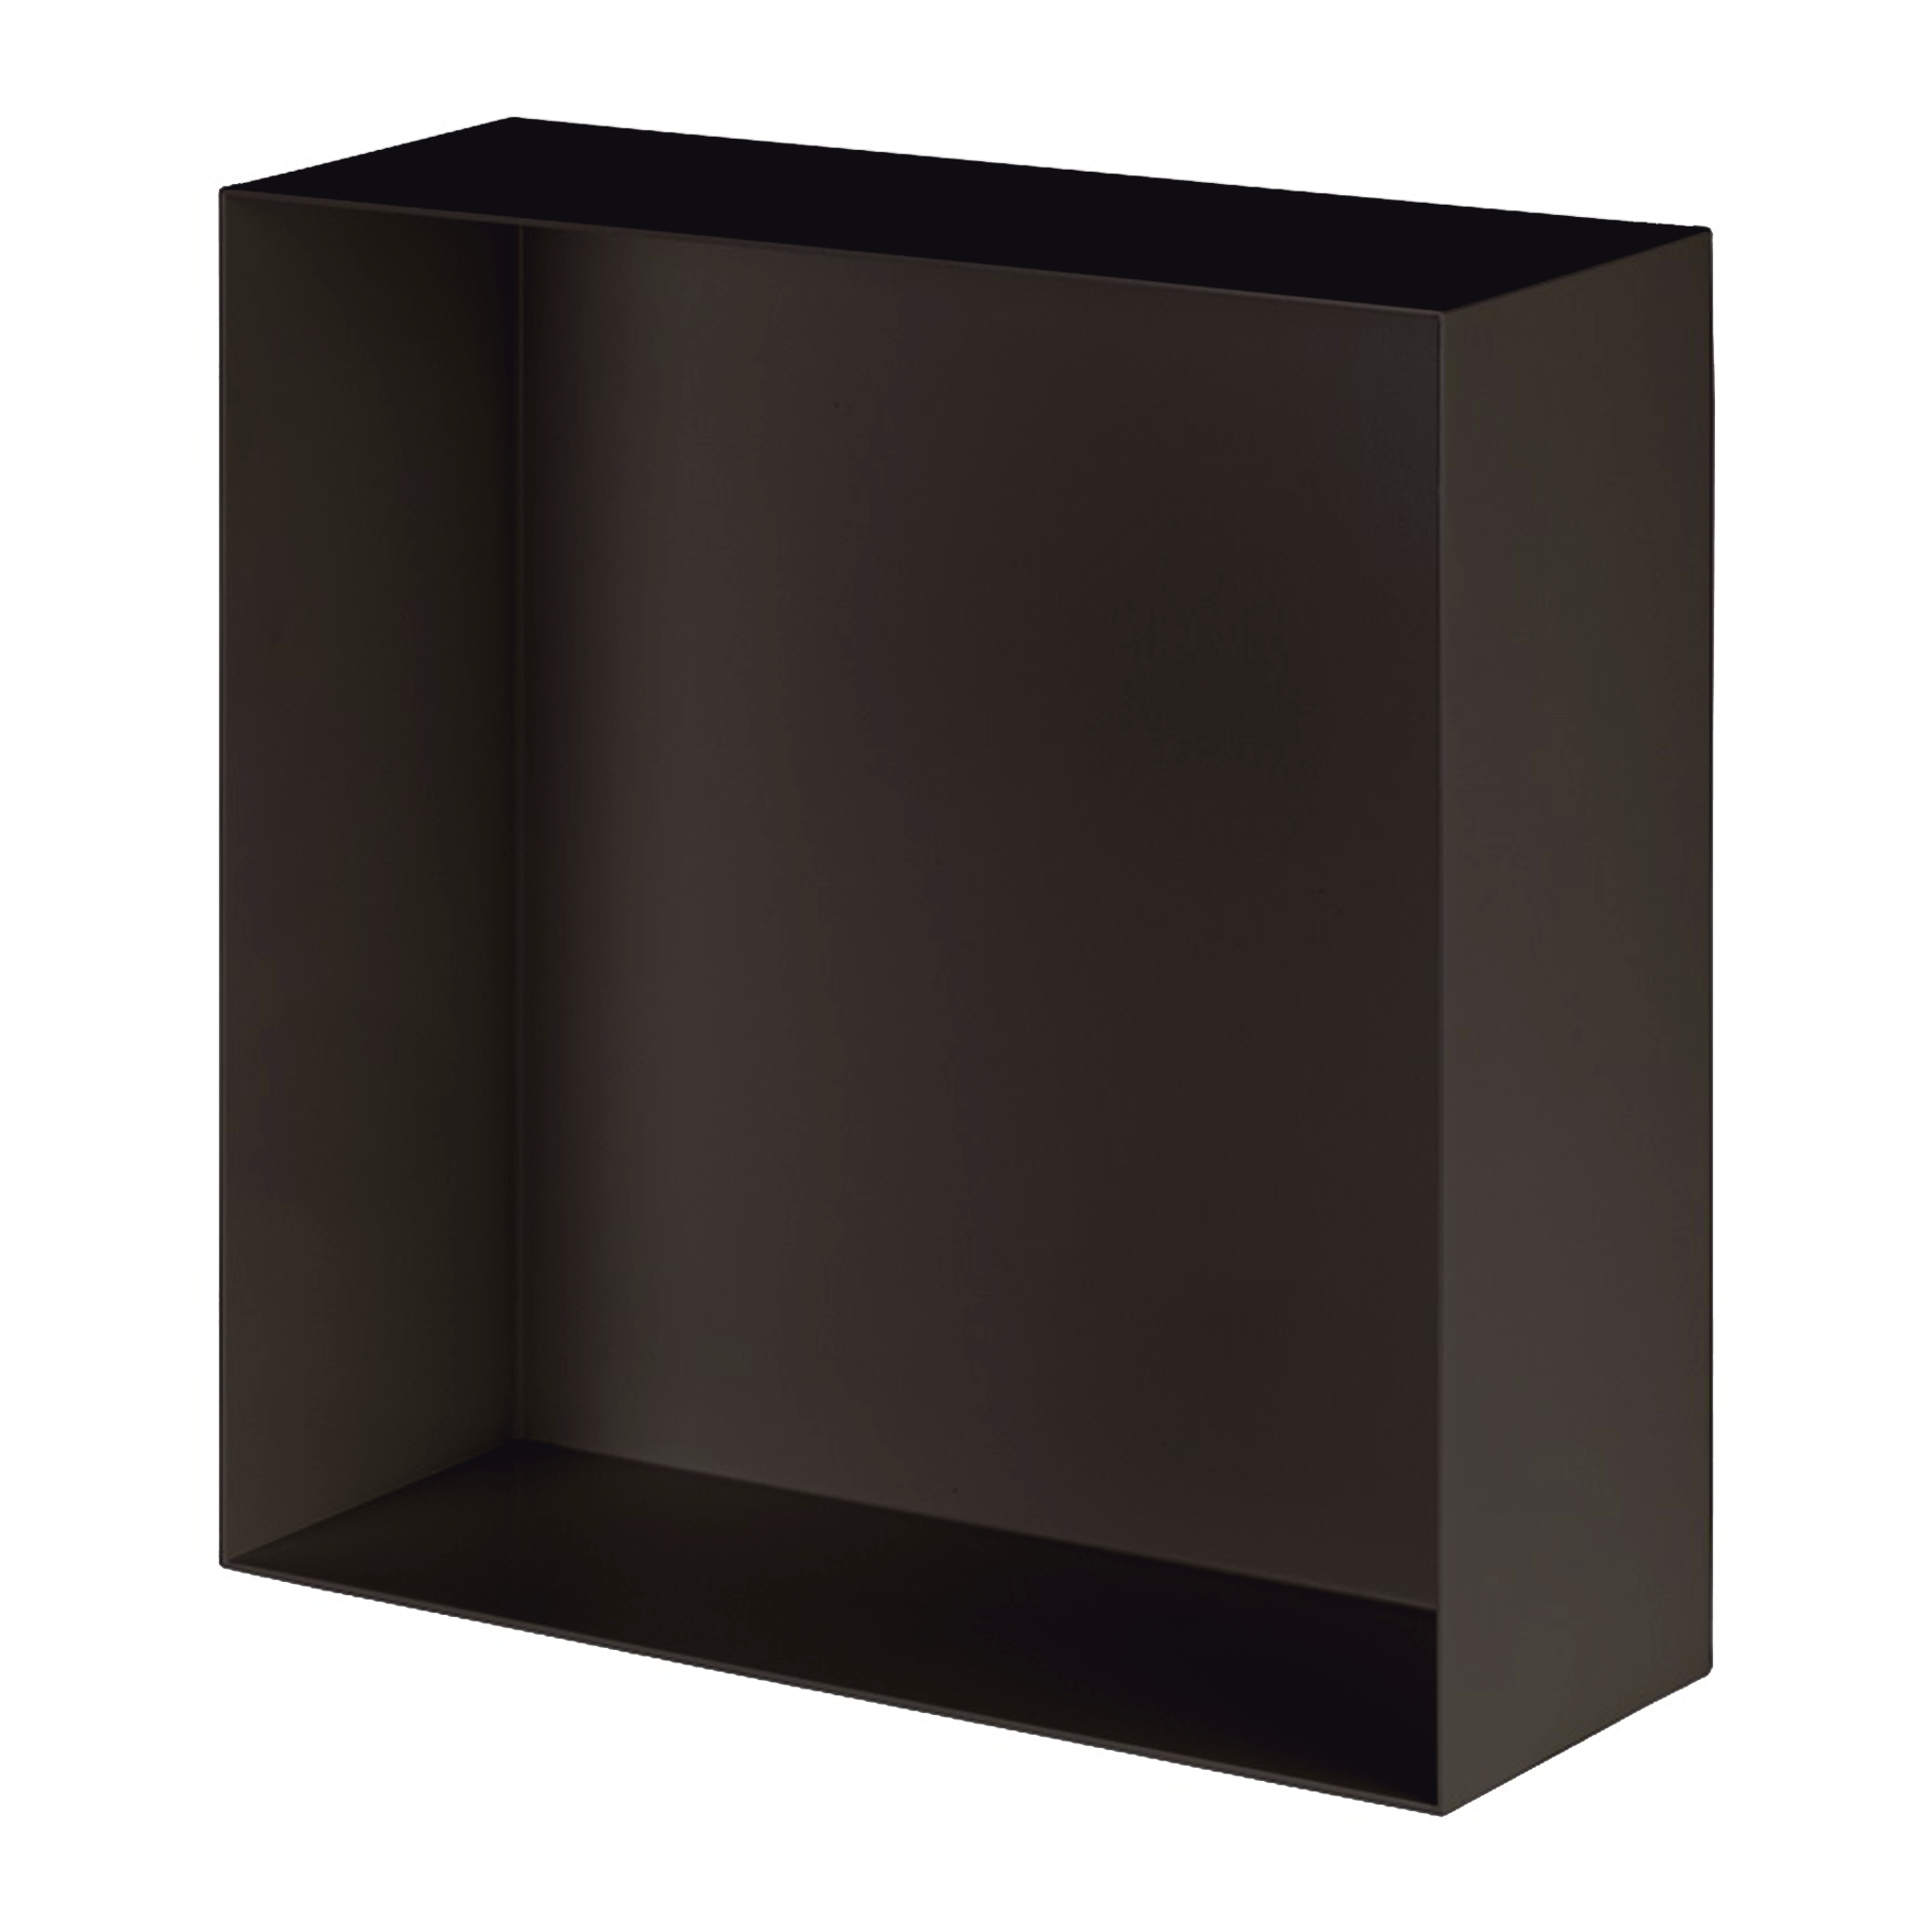 Valli Home – V-Box, Nicchia portaoggetti in Metallo smaltato color Grigio Scurissimo KK73, Misura 40X40 P. 10 cm – V-BOX.MLLO.40X40.73